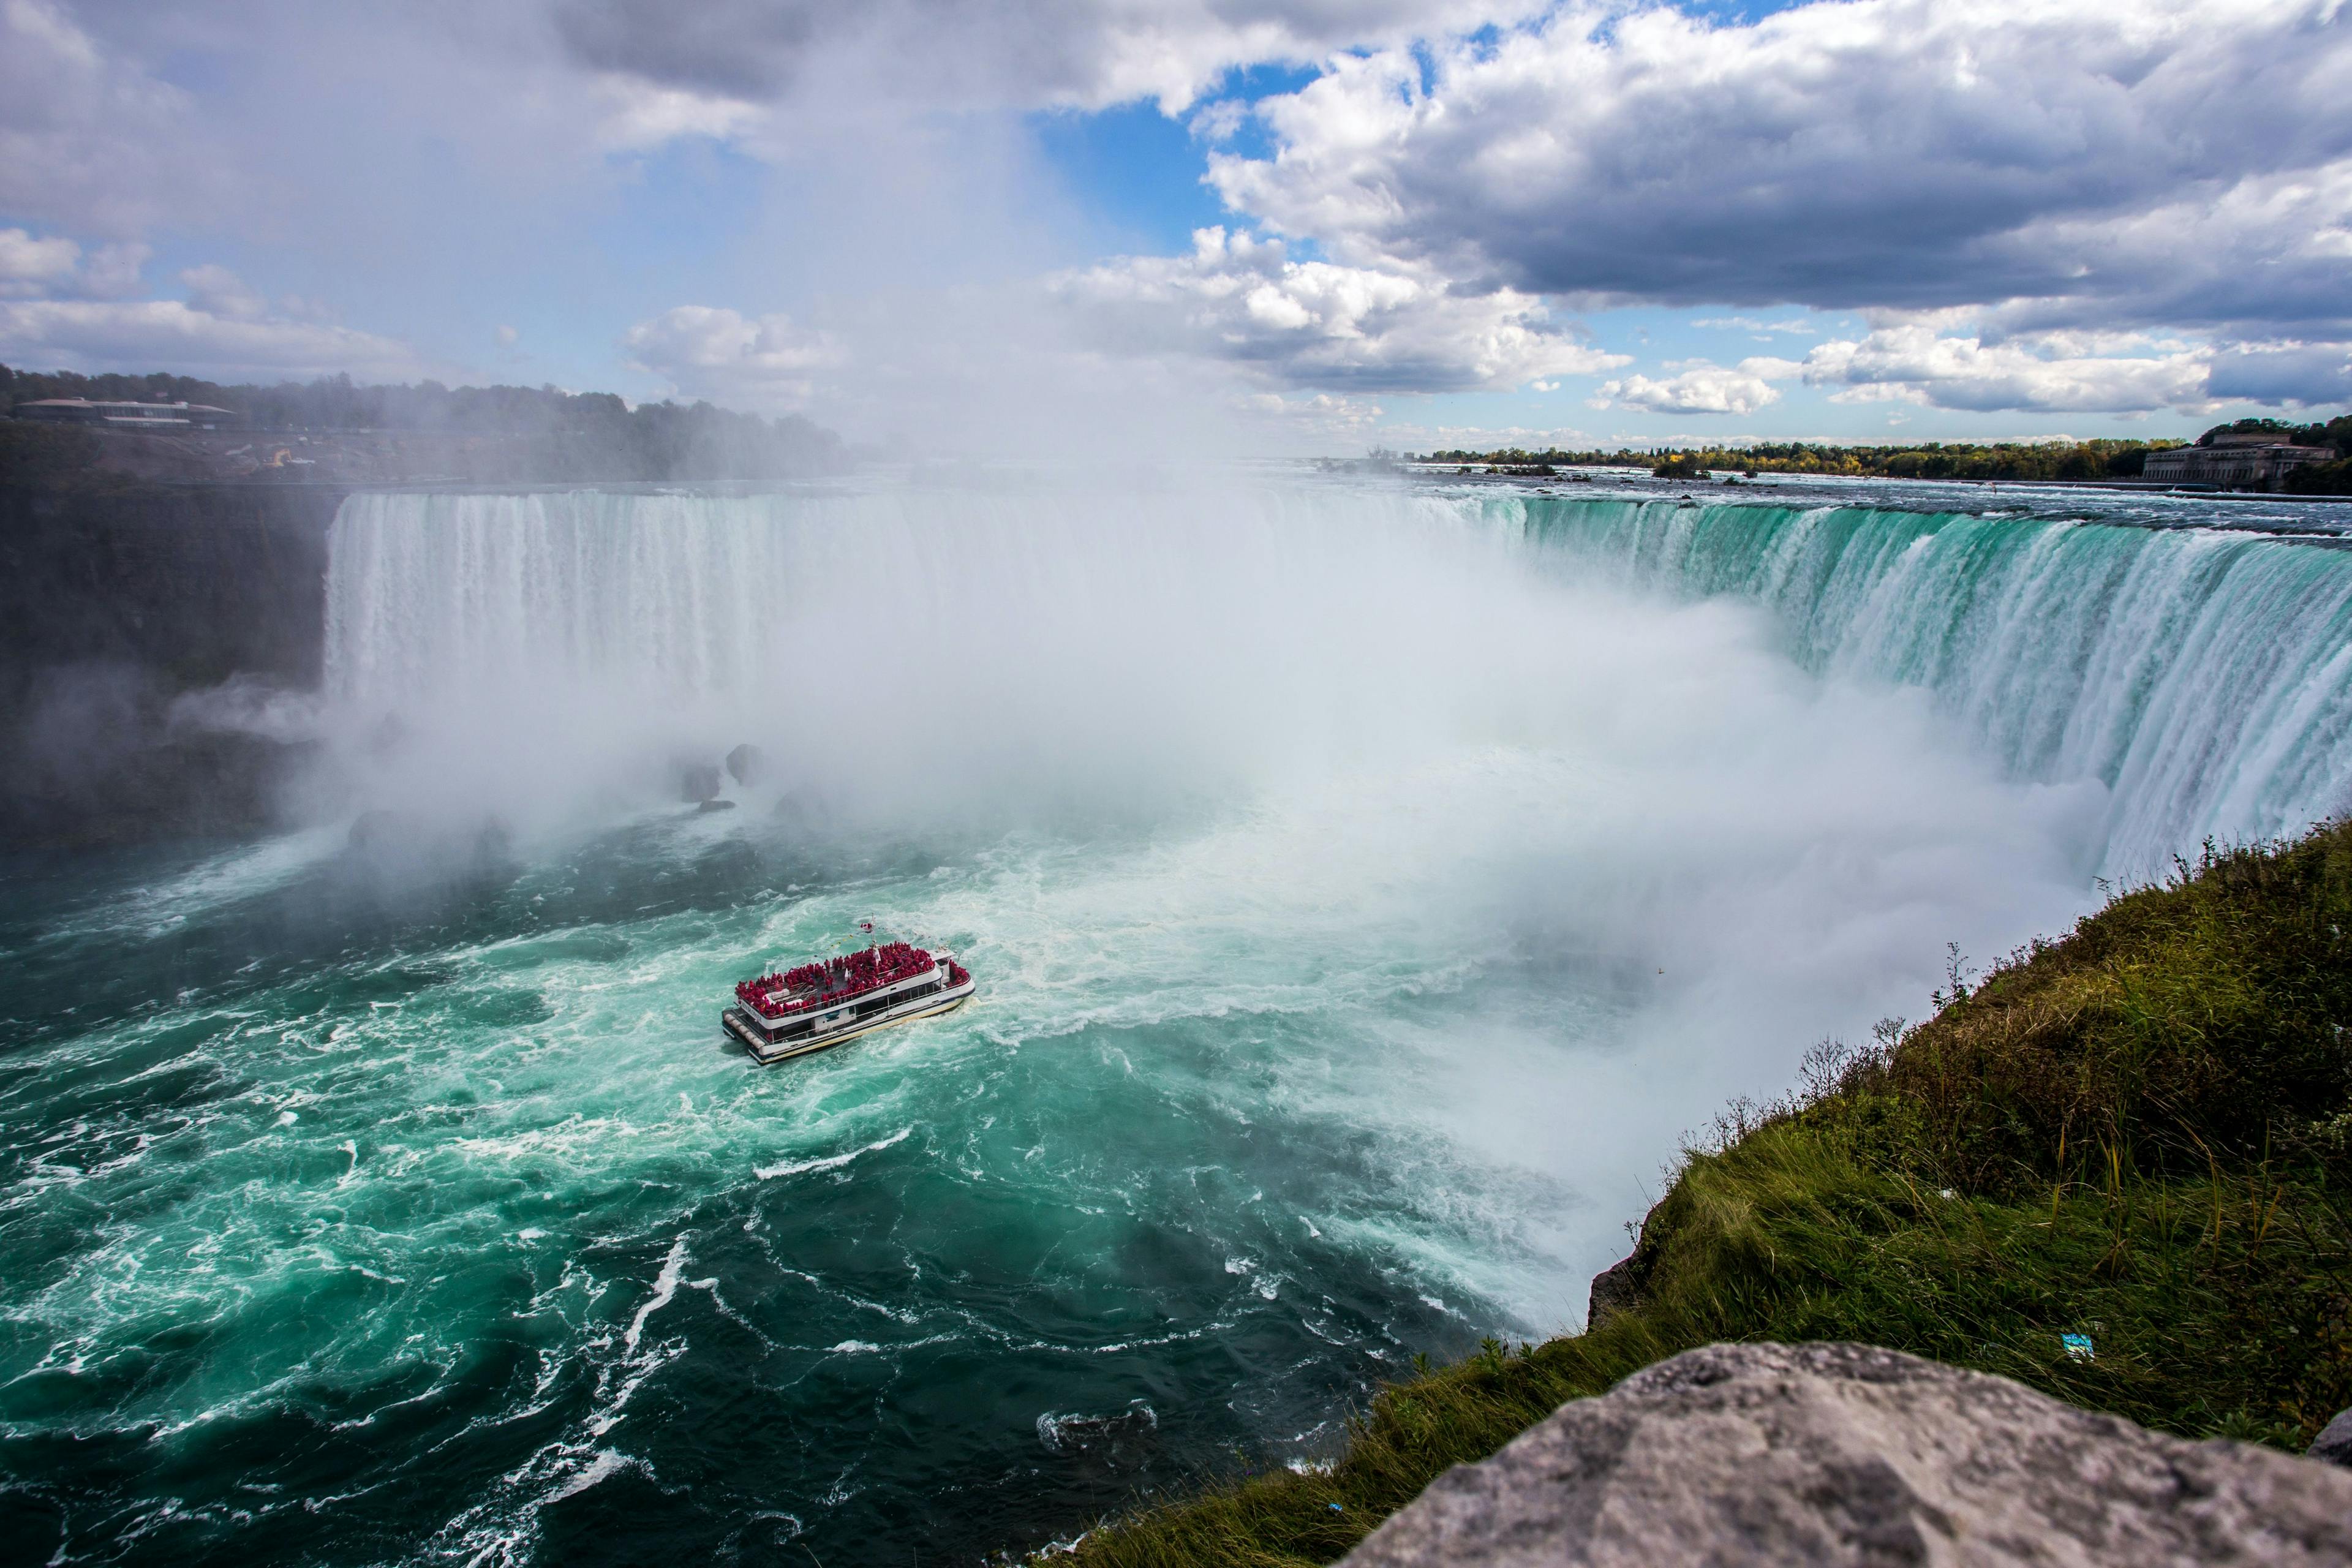 Boat approaching Niagara Falls.